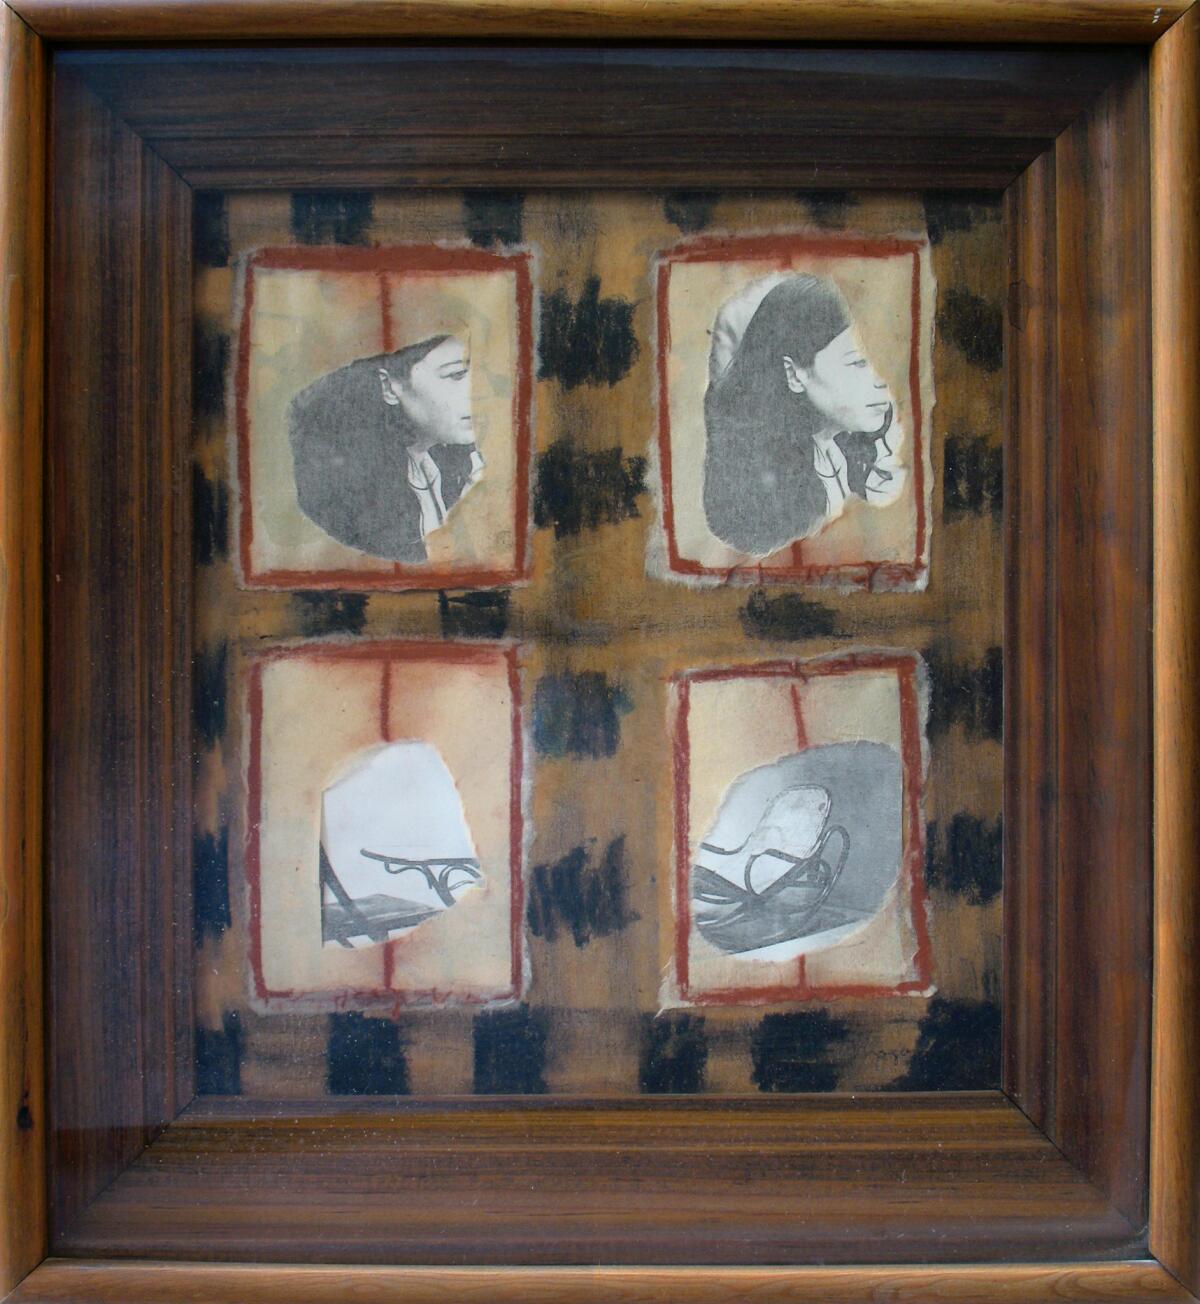 "Ventanas" [Windows], 1977-78, by Magali Lara. (Acervo Museo de Arte Moderno. / INBA-Secretaria de Cultura, Mexico City)